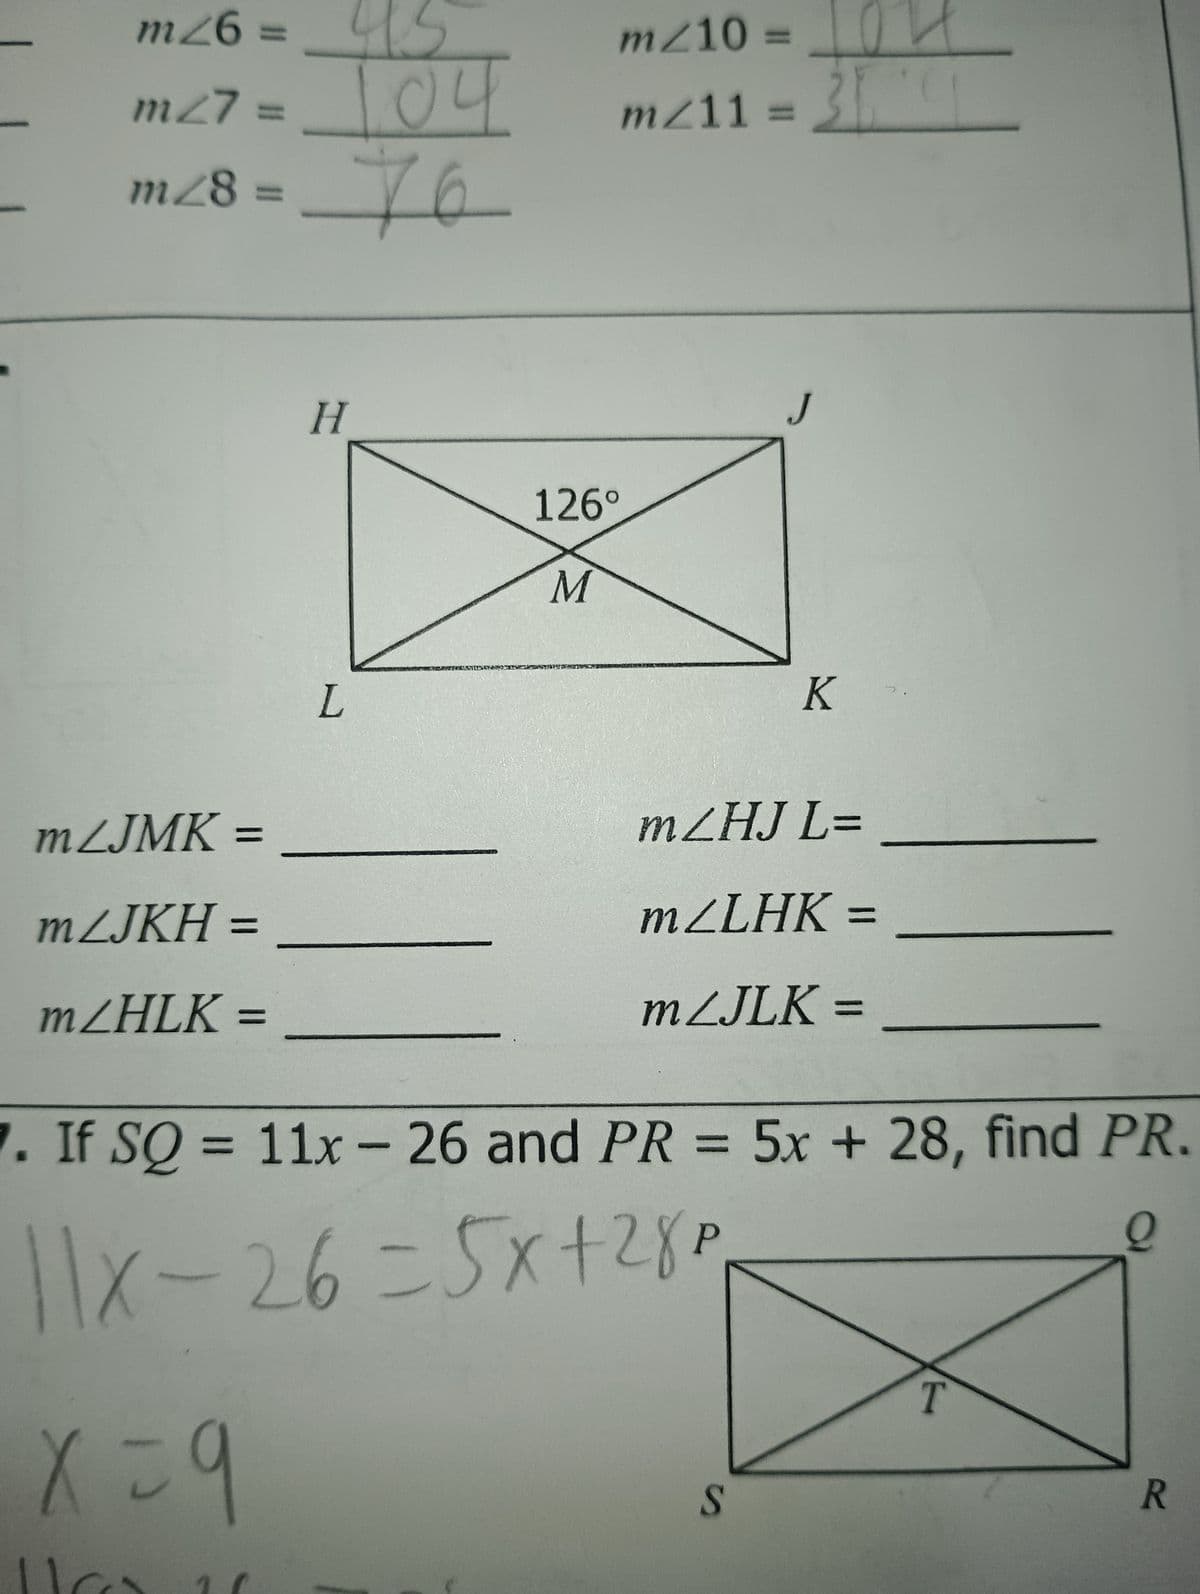 m26 =
45
m/10 =
m27 =
104
mz11 =
m28 = 76
mZJMK =
=
mZJKH =
mZHLK =
=
H
126°
M
L
J
K
mZHJ L=
mZLHK =
=
mZJLK =
7. If SQ = 11x- 26 and PR = 5x + 28, find PR.
P
11x-26=5x+28p
x=9
S
T
R